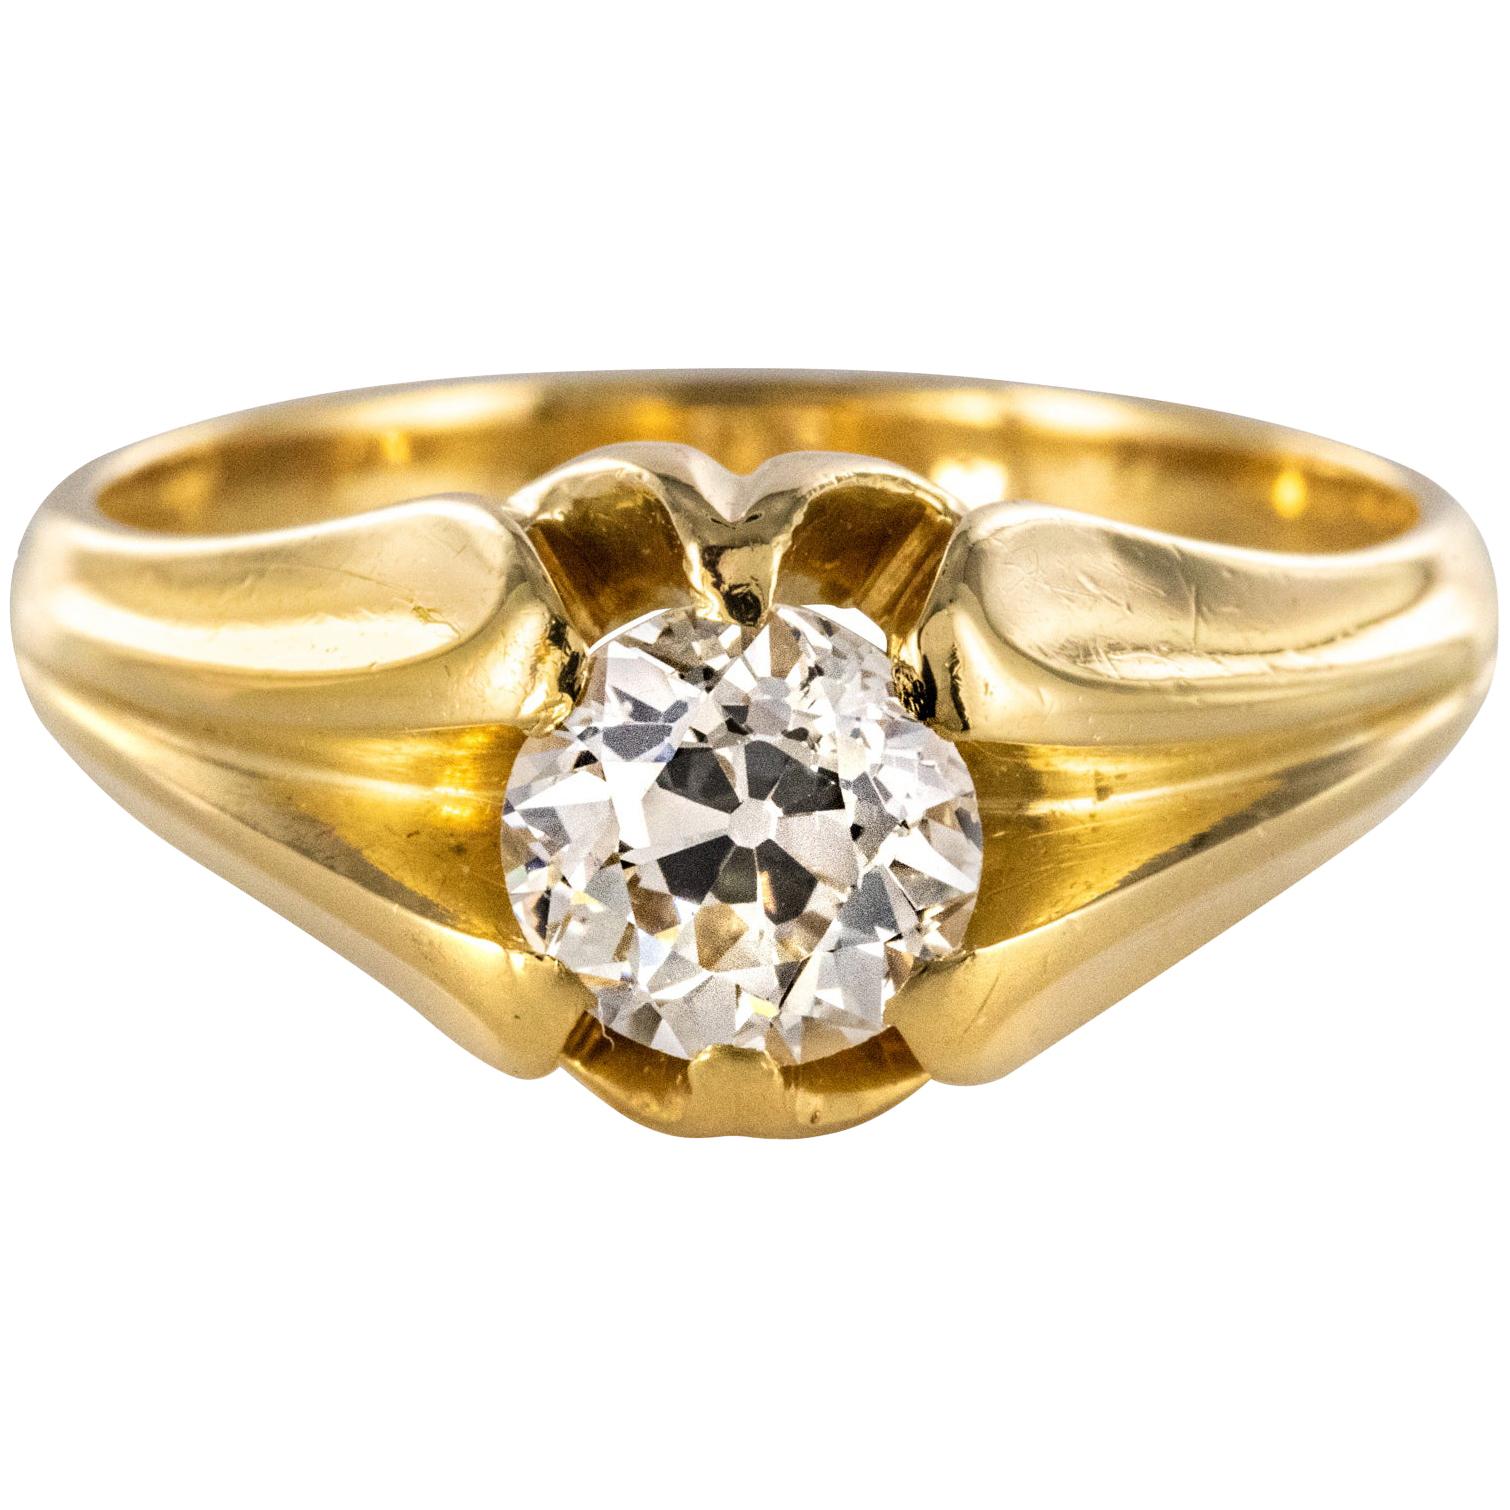 19th Century 0.80 Carat Diamond 18 Karat Yellow Gold Bangle Ring